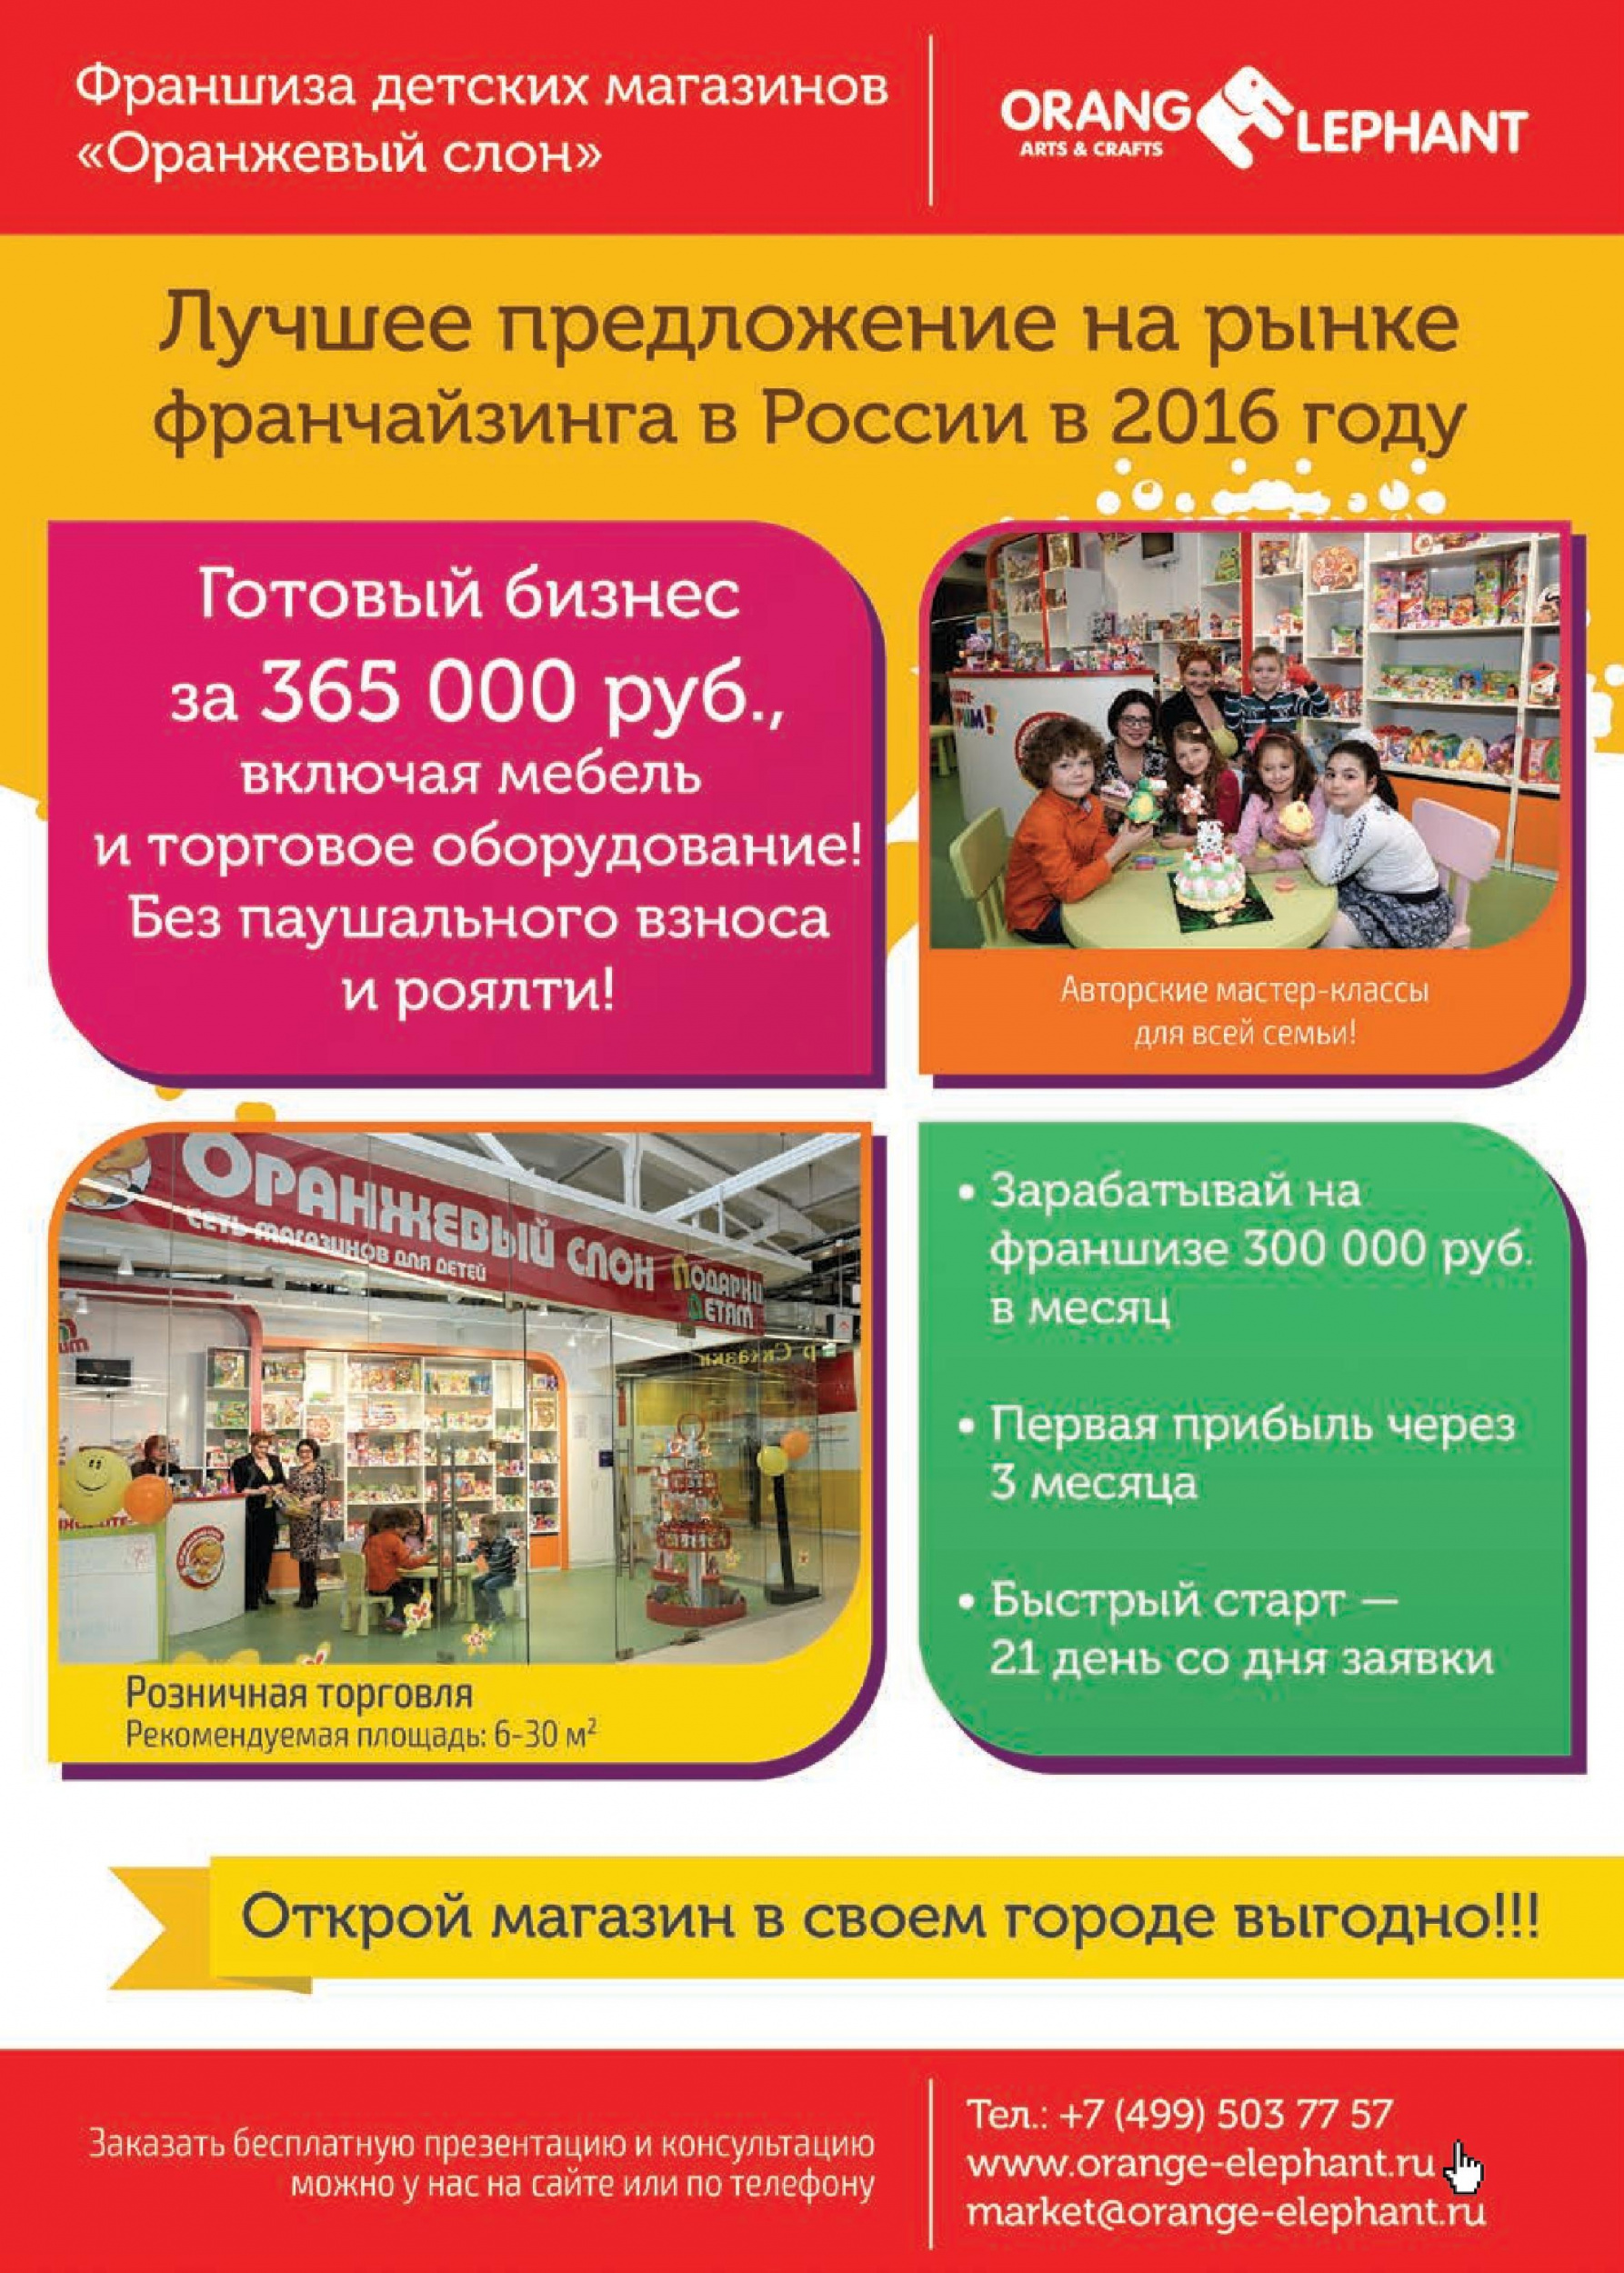 Франшиза детских магазинов "Оранжевый слон"